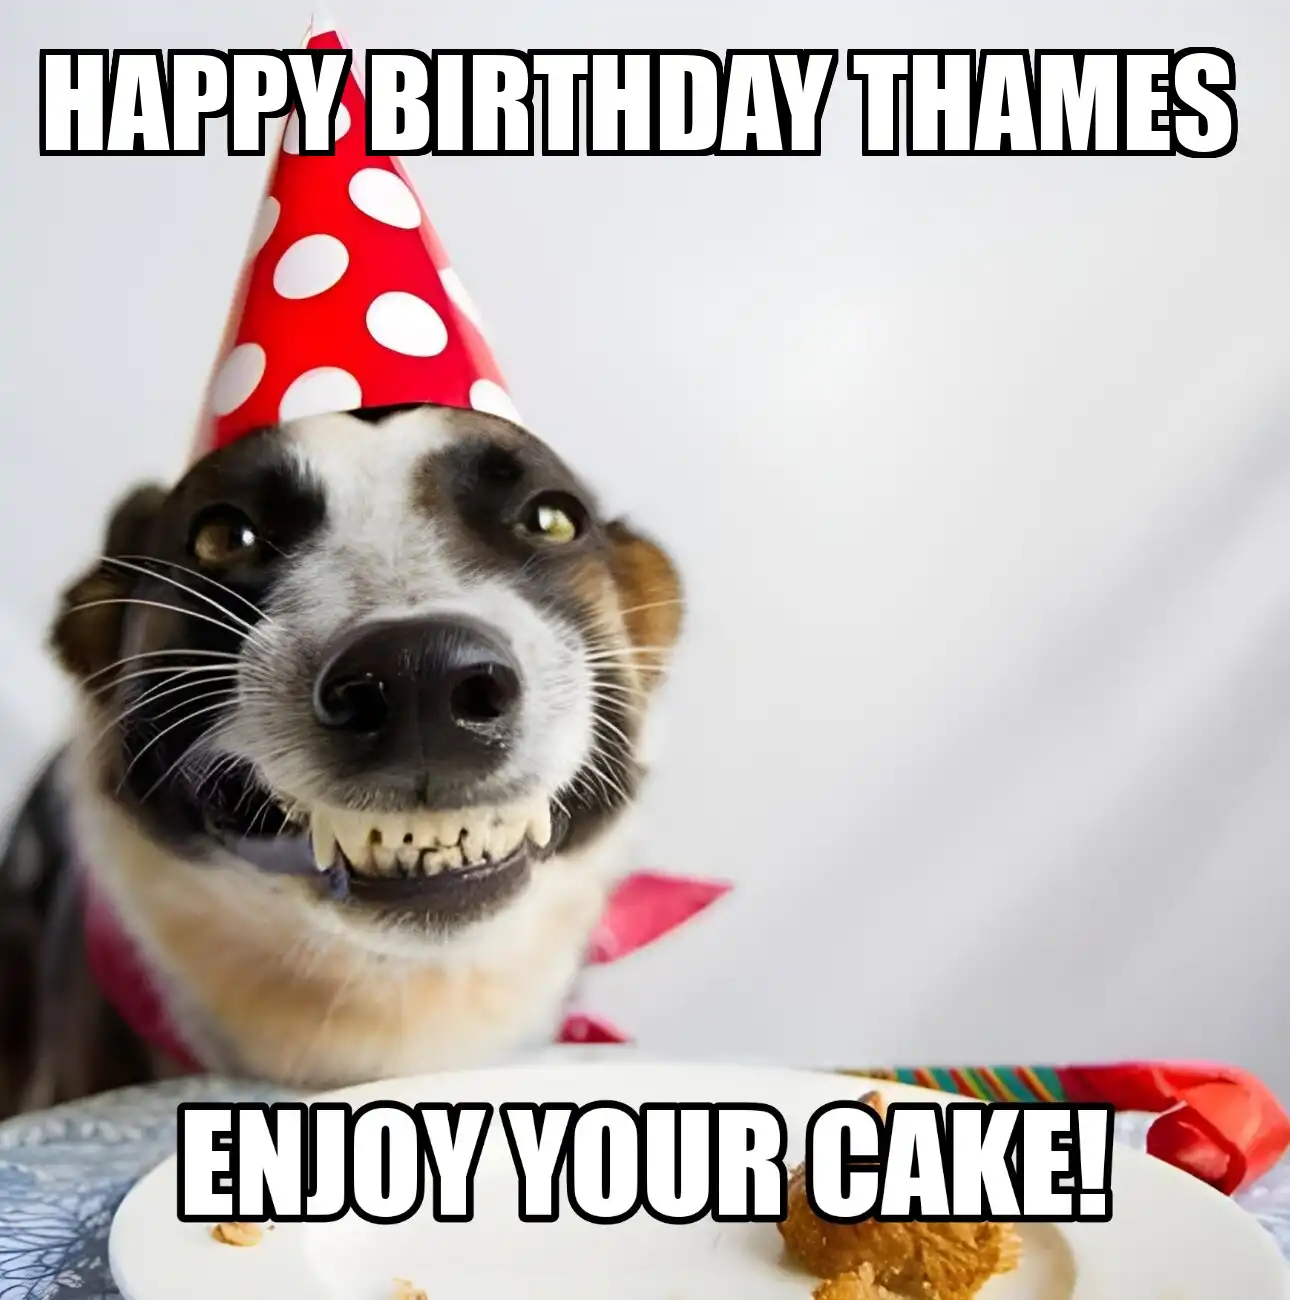 Happy Birthday Thames Enjoy Your Cake Dog Meme